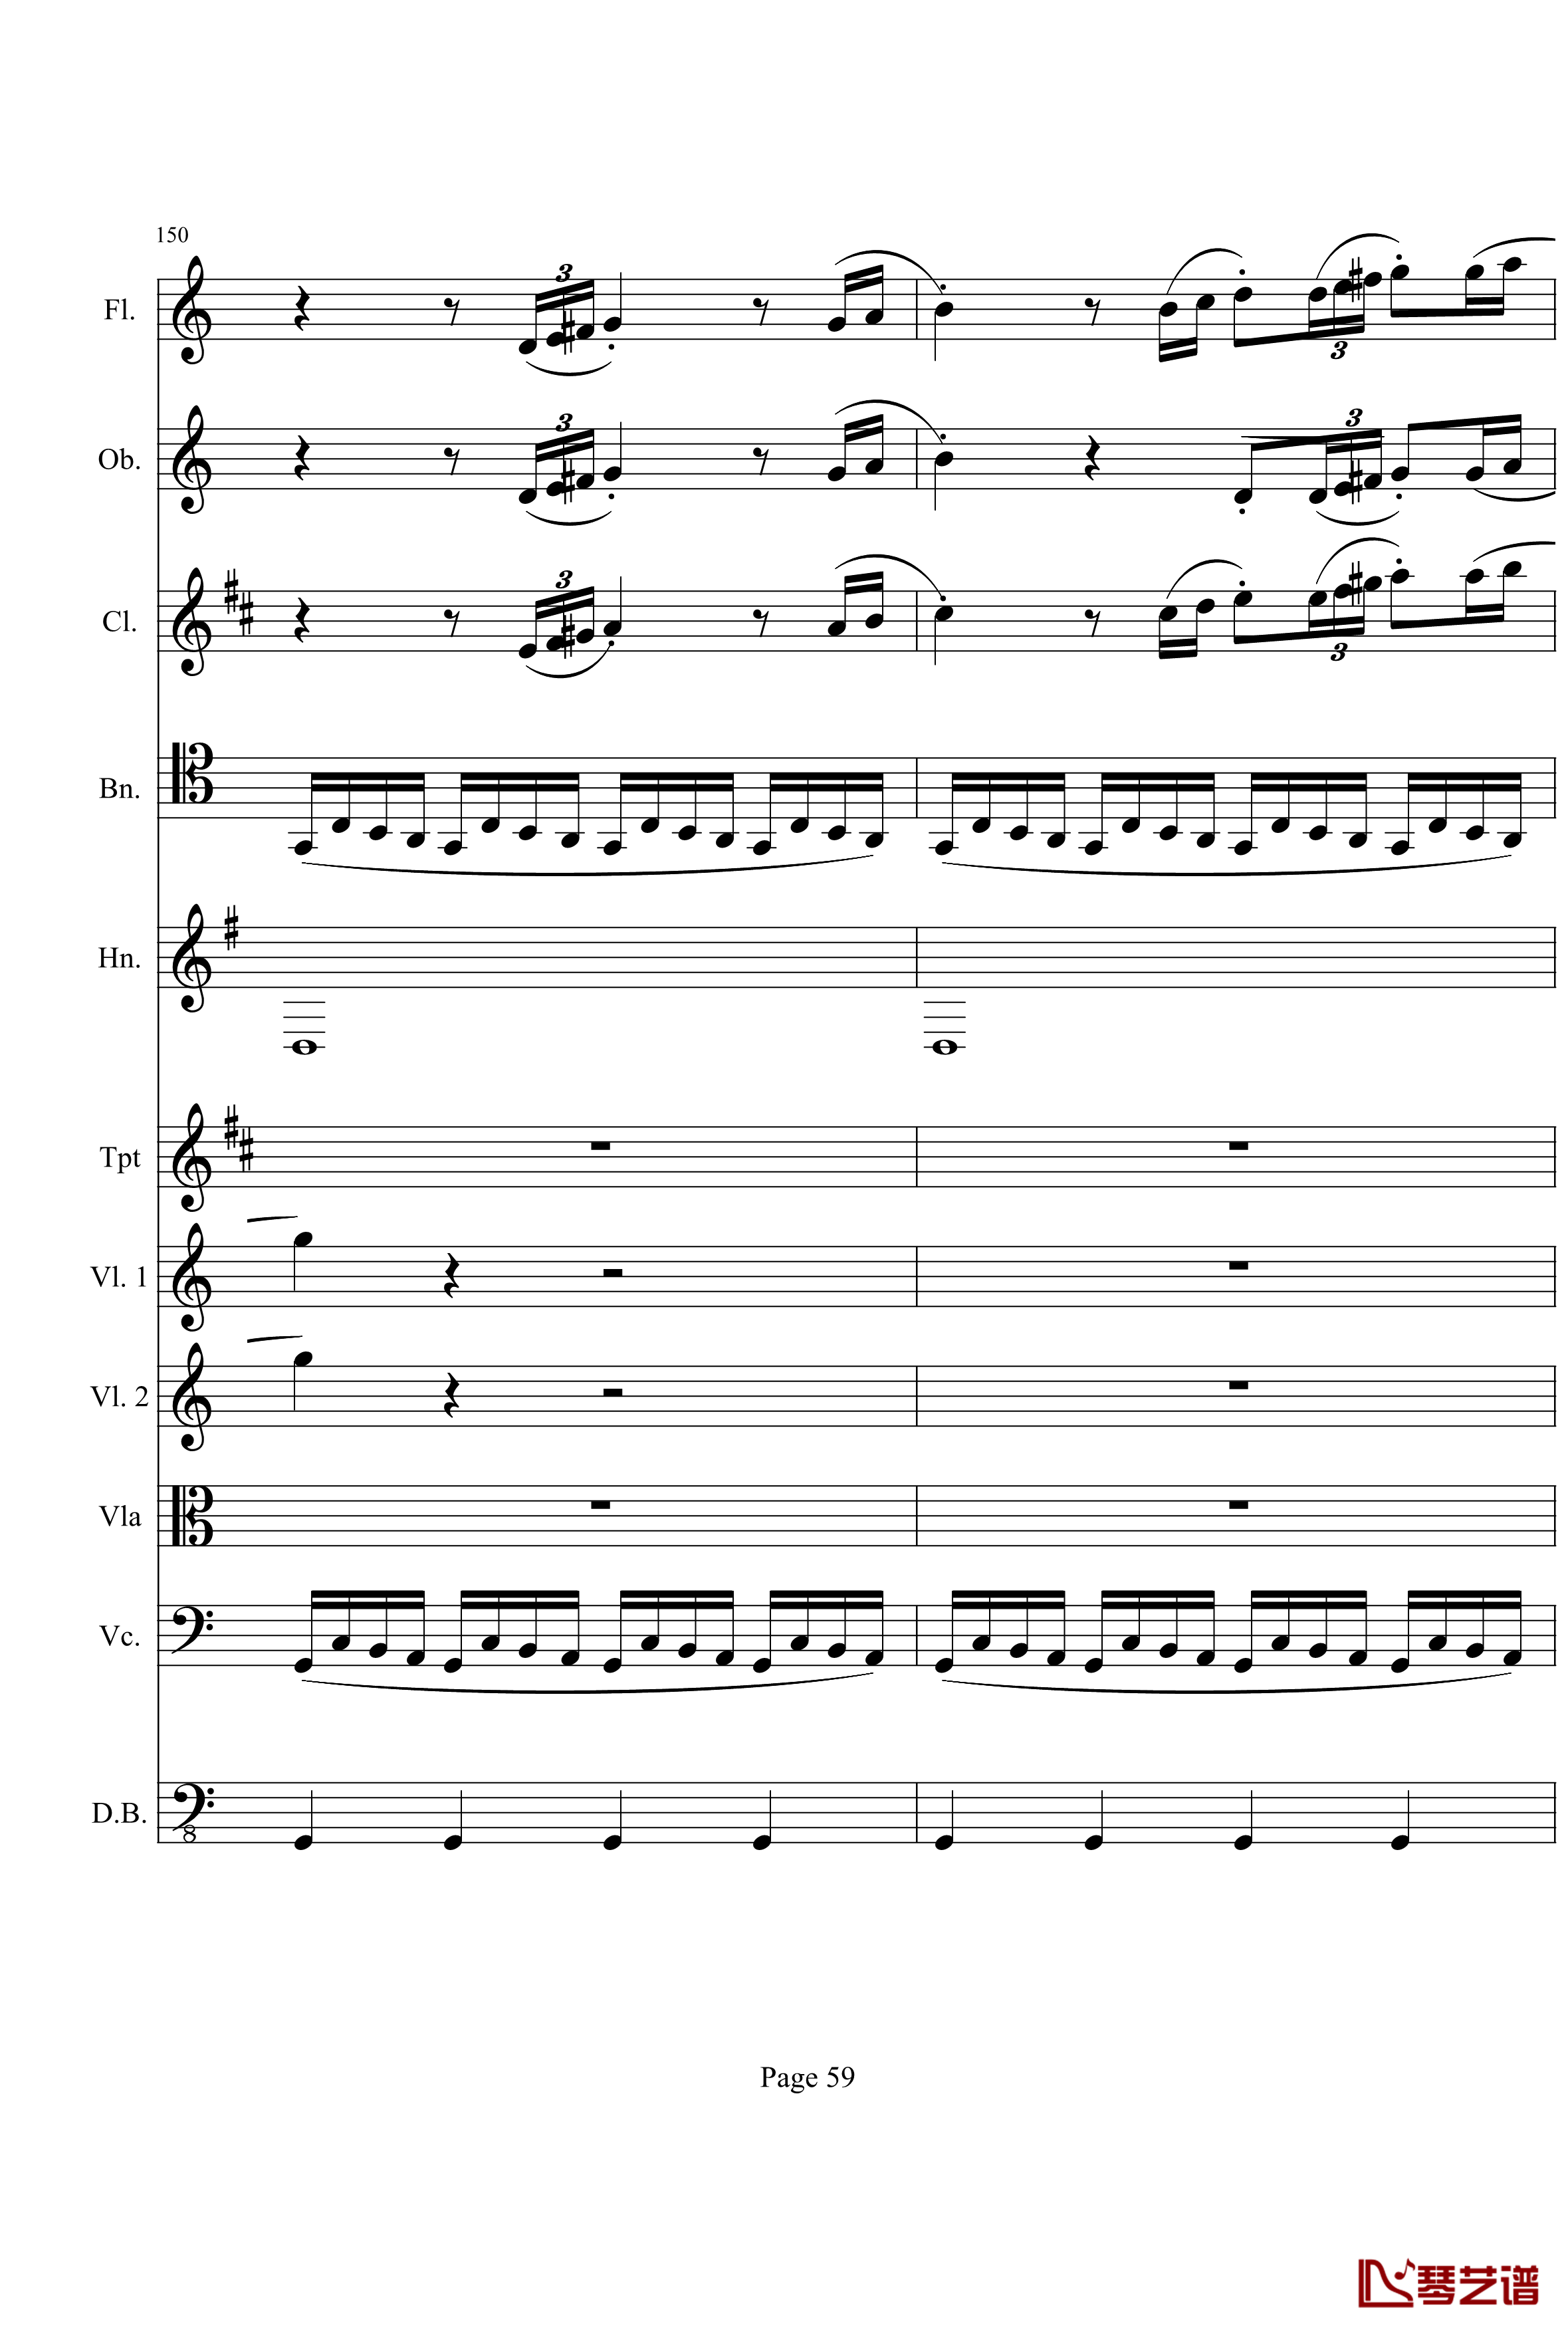 奏鸣曲之交响钢琴谱-第21首-Ⅰ-贝多芬-beethoven59